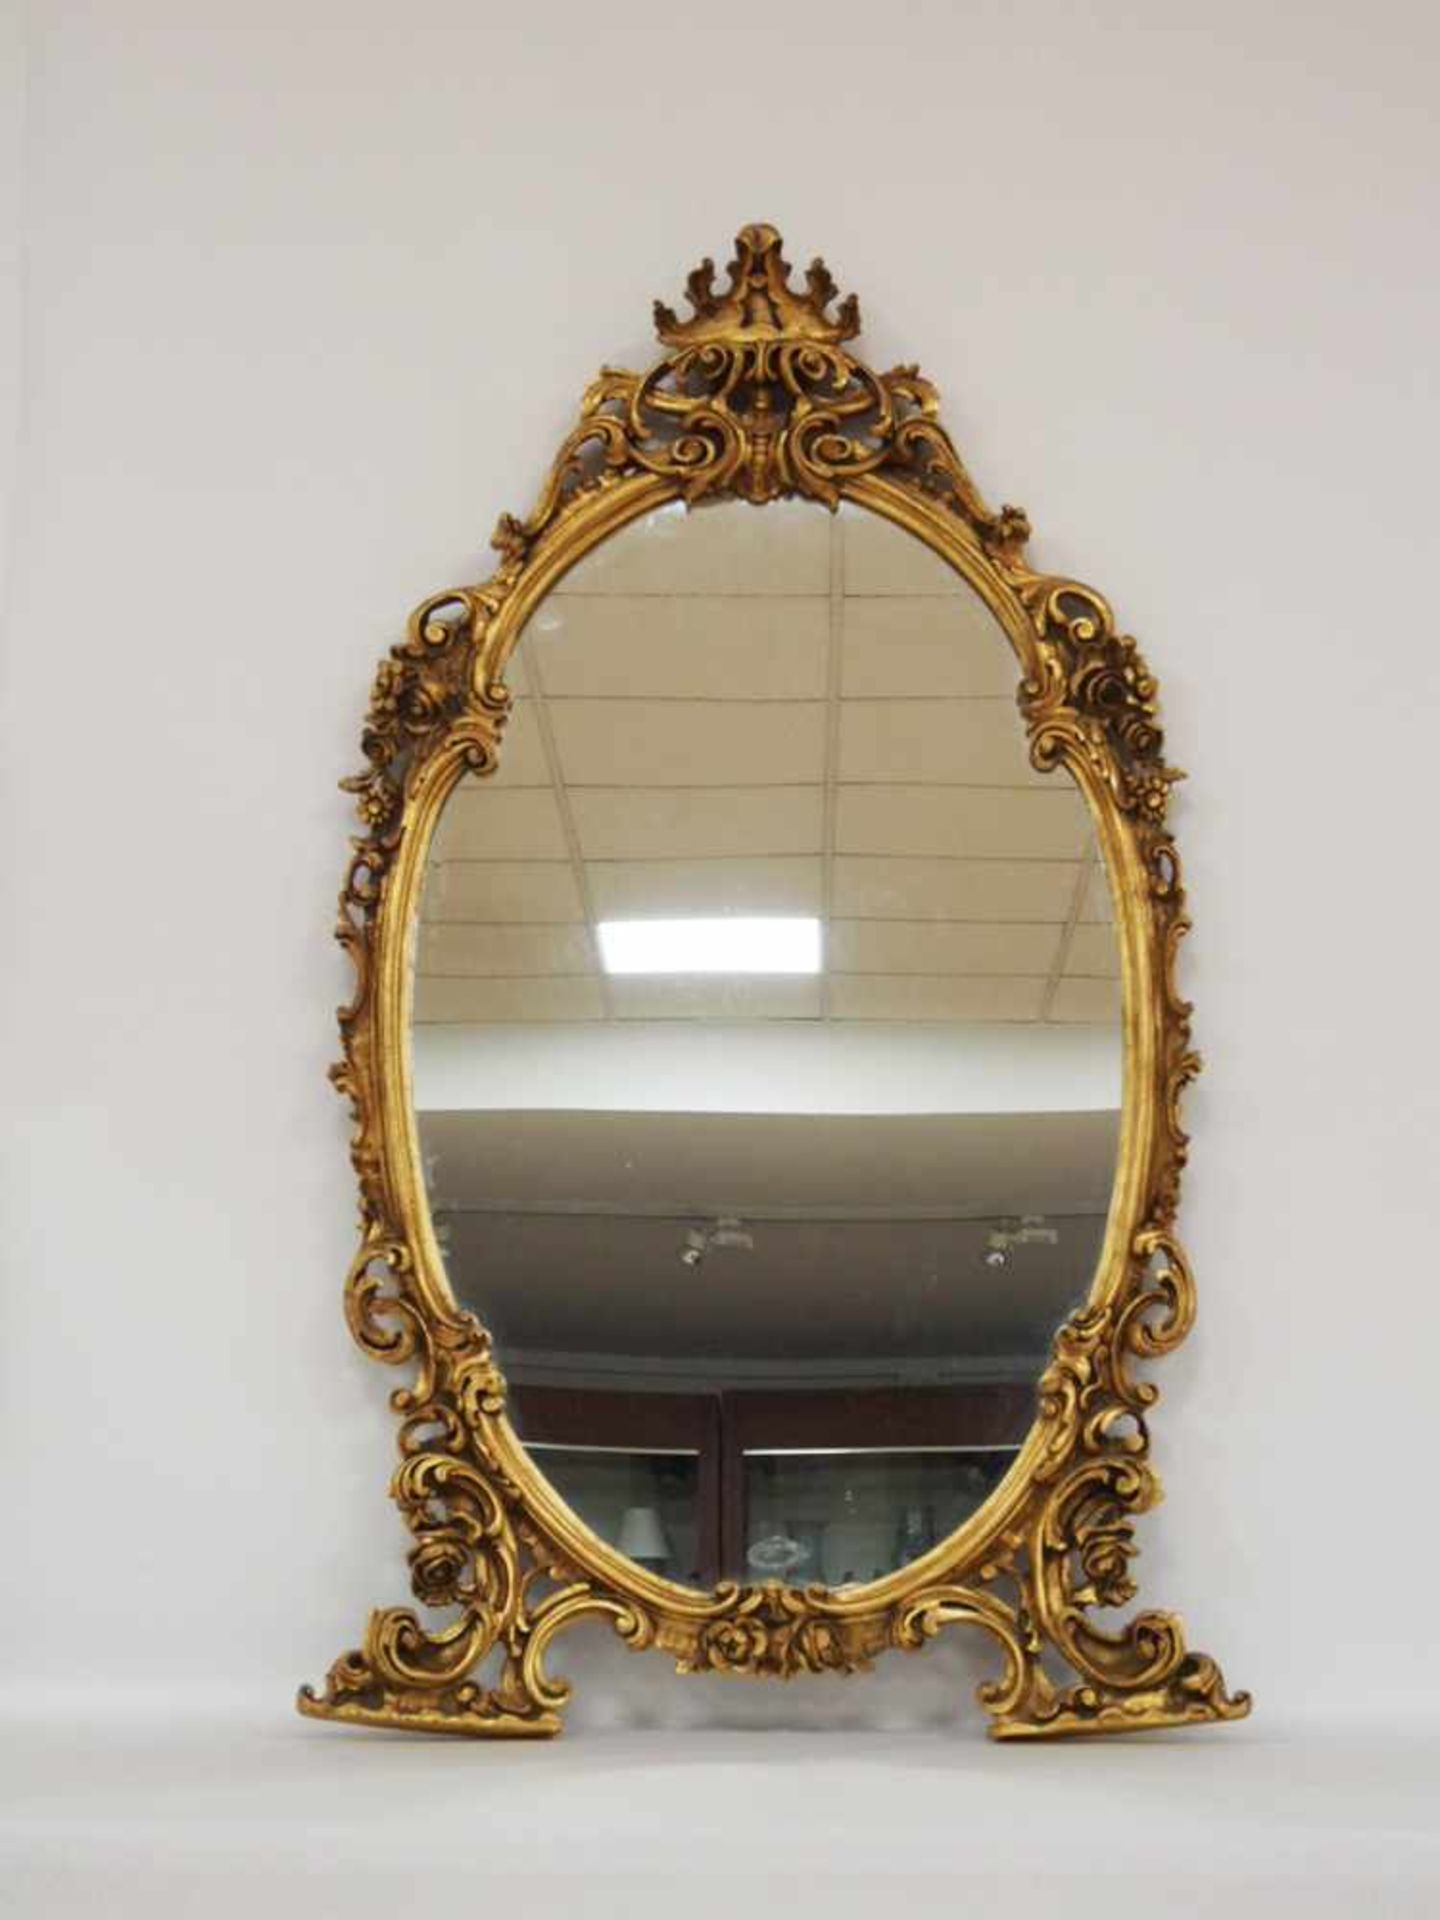 Konsoltisch mit SpiegelHolz, geschnitzt, vergoldet (z.T. mit Klarlack überzogen), Marmorplatte, - Bild 2 aus 2